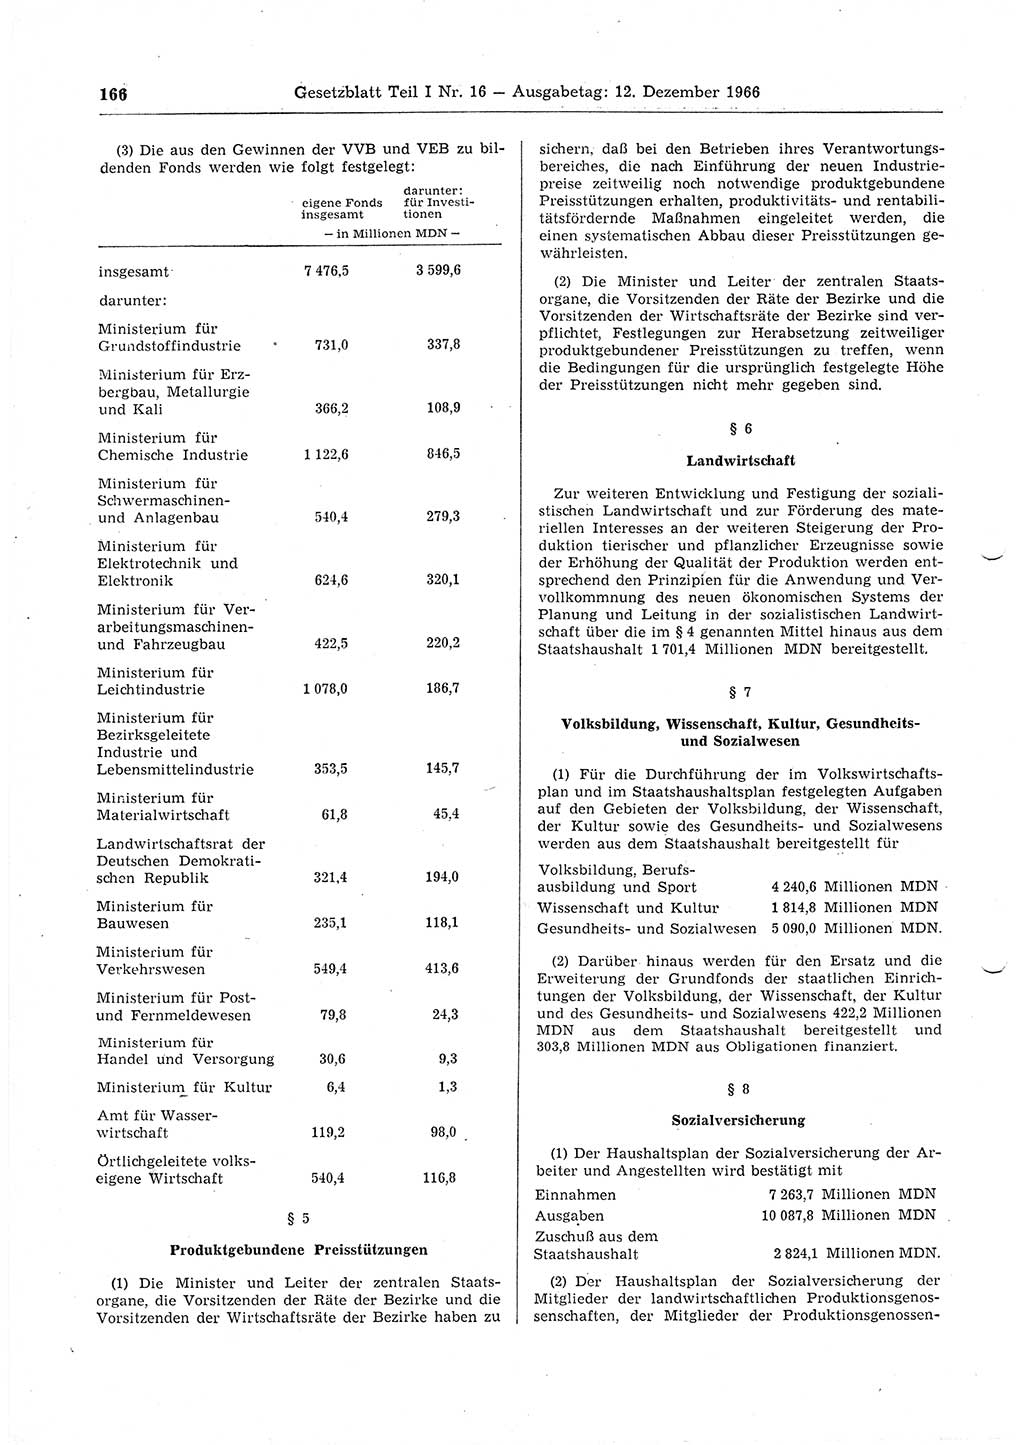 Gesetzblatt (GBl.) der Deutschen Demokratischen Republik (DDR) Teil Ⅰ 1966, Seite 166 (GBl. DDR Ⅰ 1966, S. 166)